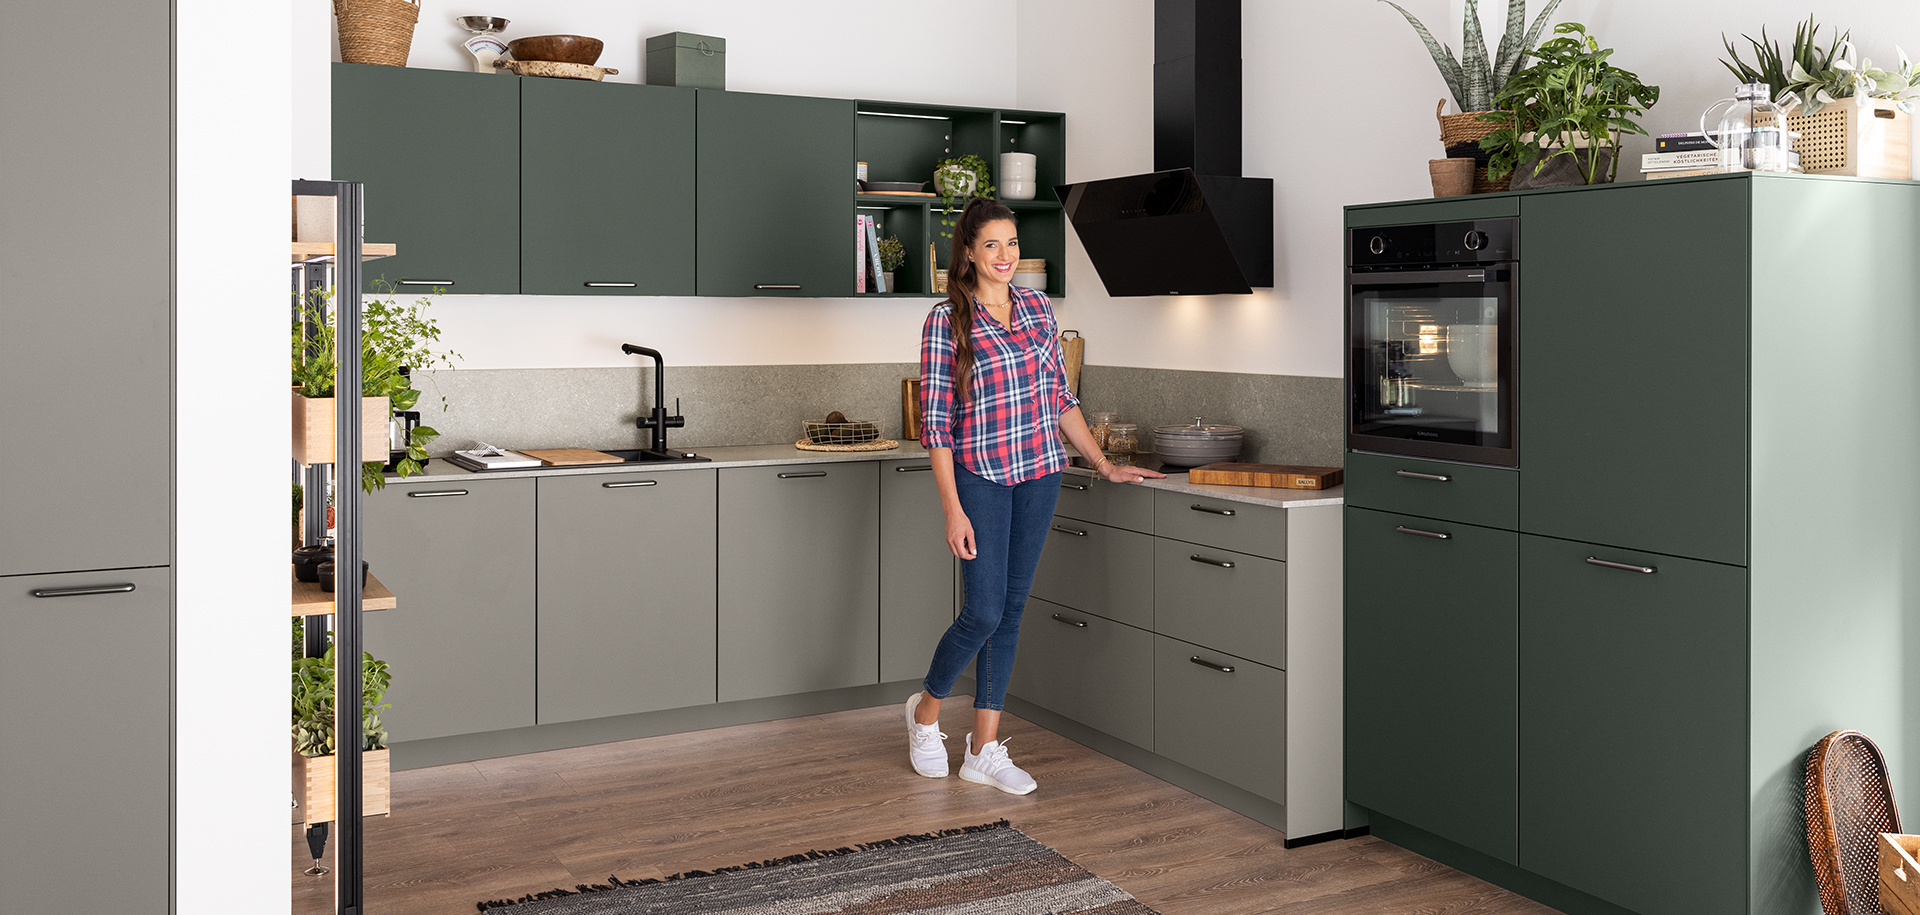 Femme debout dans une cuisine moderne avec des armoires vertes, des appareils en acier inoxydable et des accents en bois, faisant un geste accueillant.